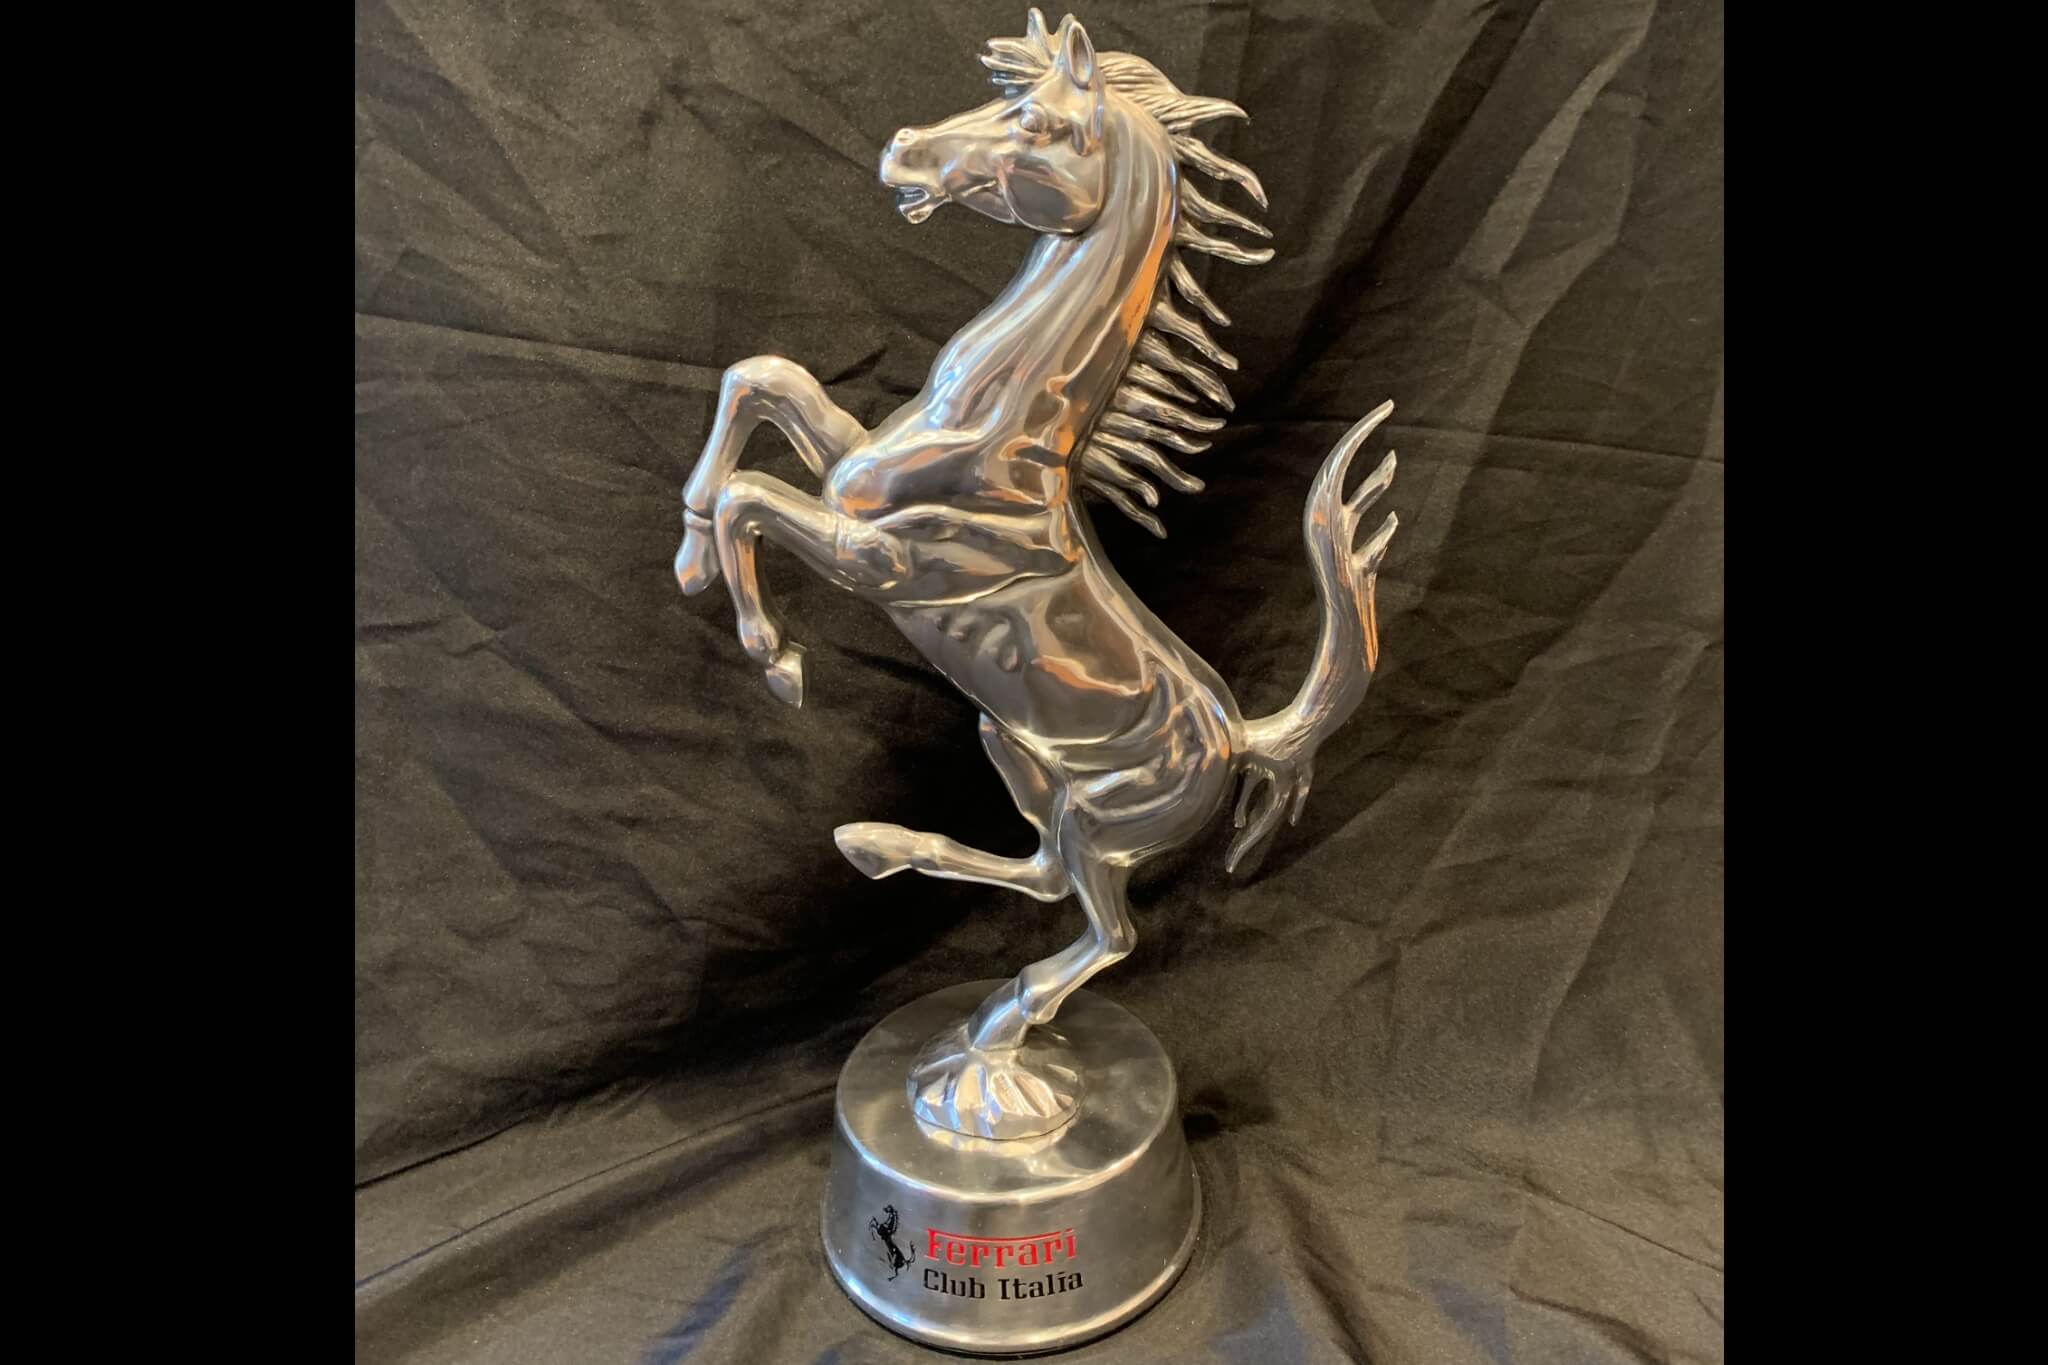  Authentic Ferrari Club Italia Trophy